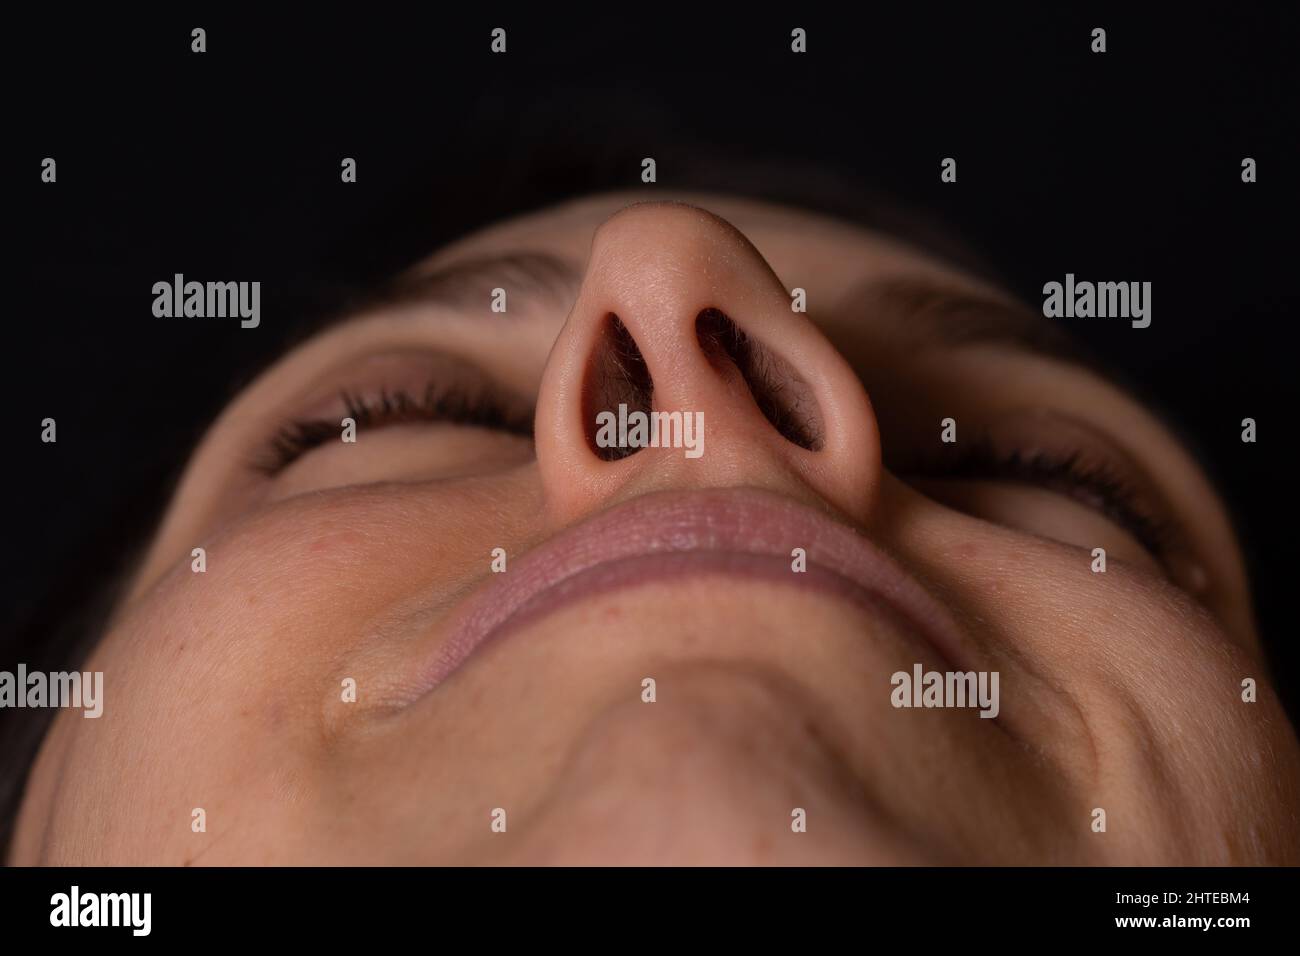 Détail du visage de la femme vu en perspective montrant le septum nasal dévié Banque D'Images